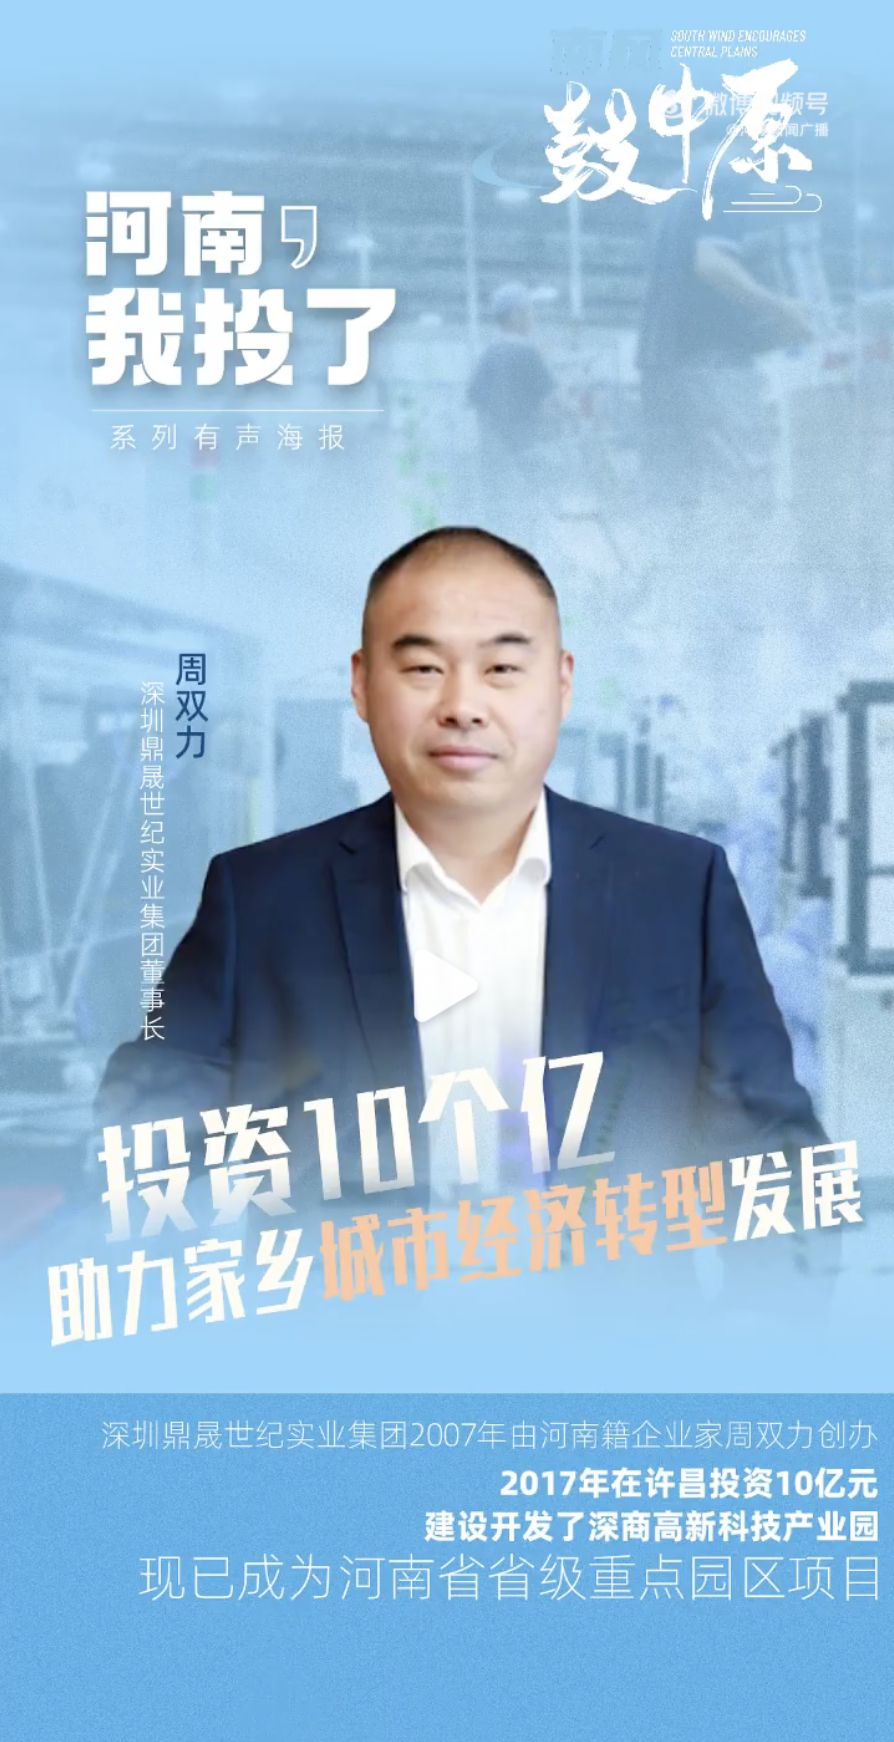 河南廣電專訪 | 鼎晟集團周雙力董事長投資10個億助力家鄉發展